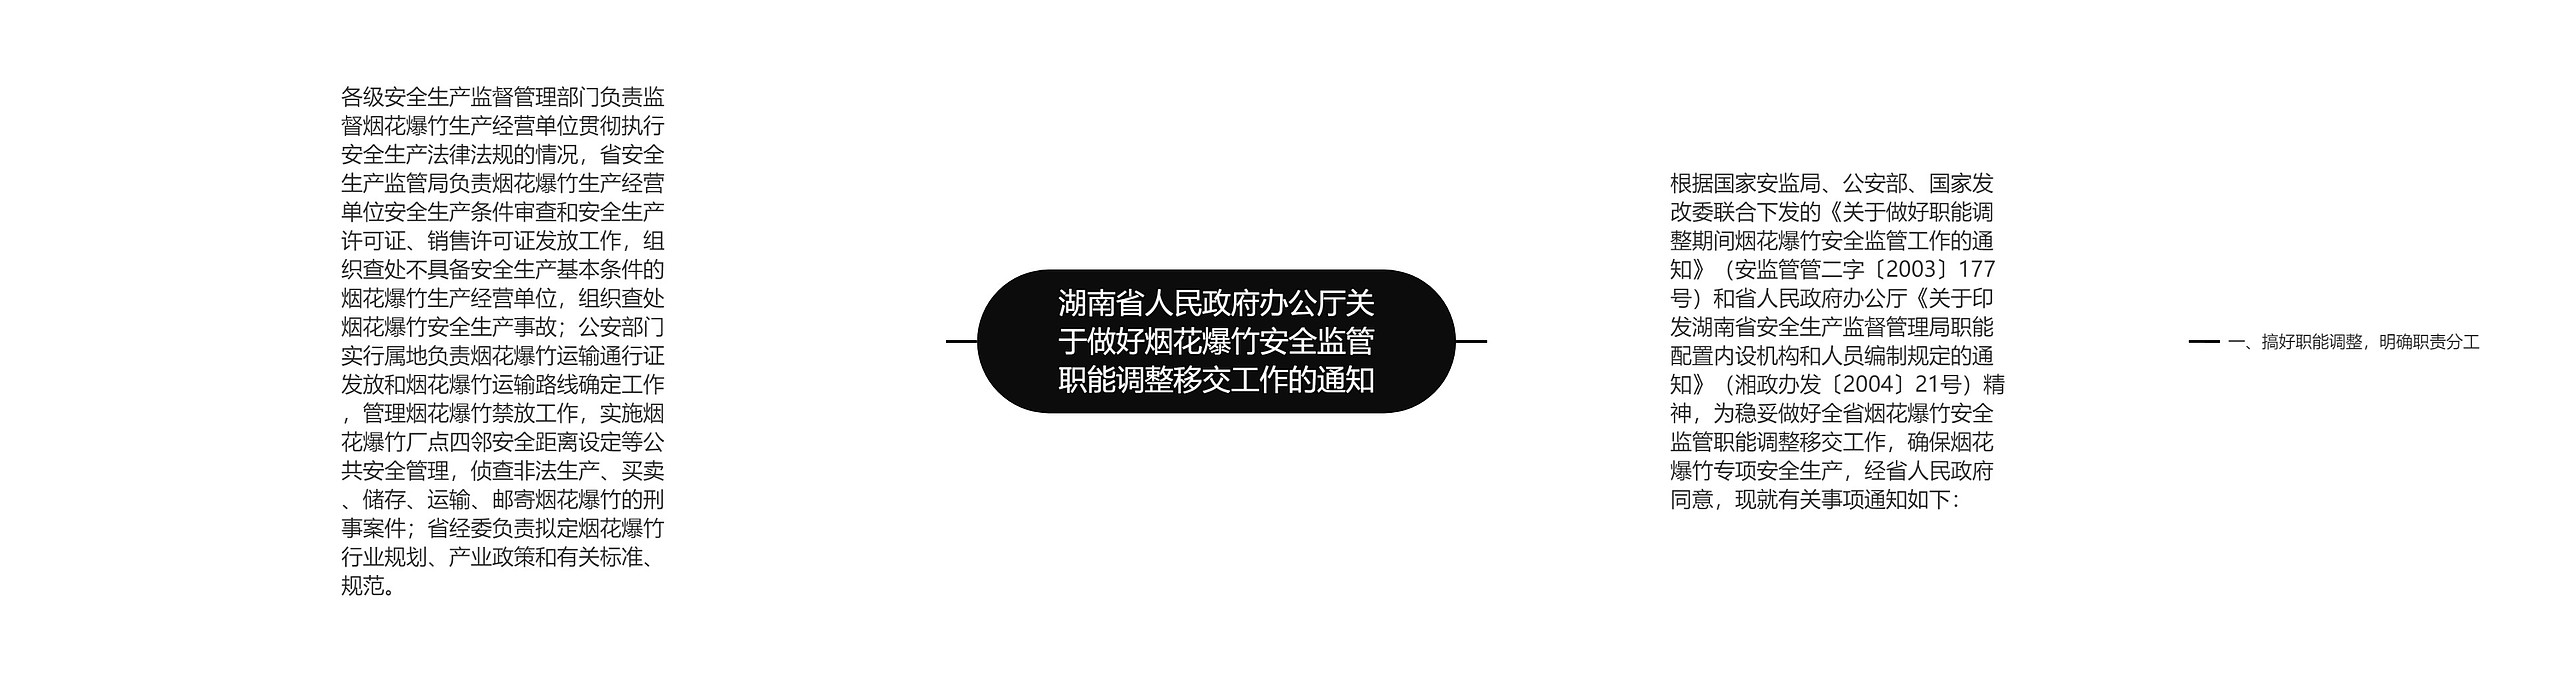 湖南省人民政府办公厅关于做好烟花爆竹安全监管职能调整移交工作的通知